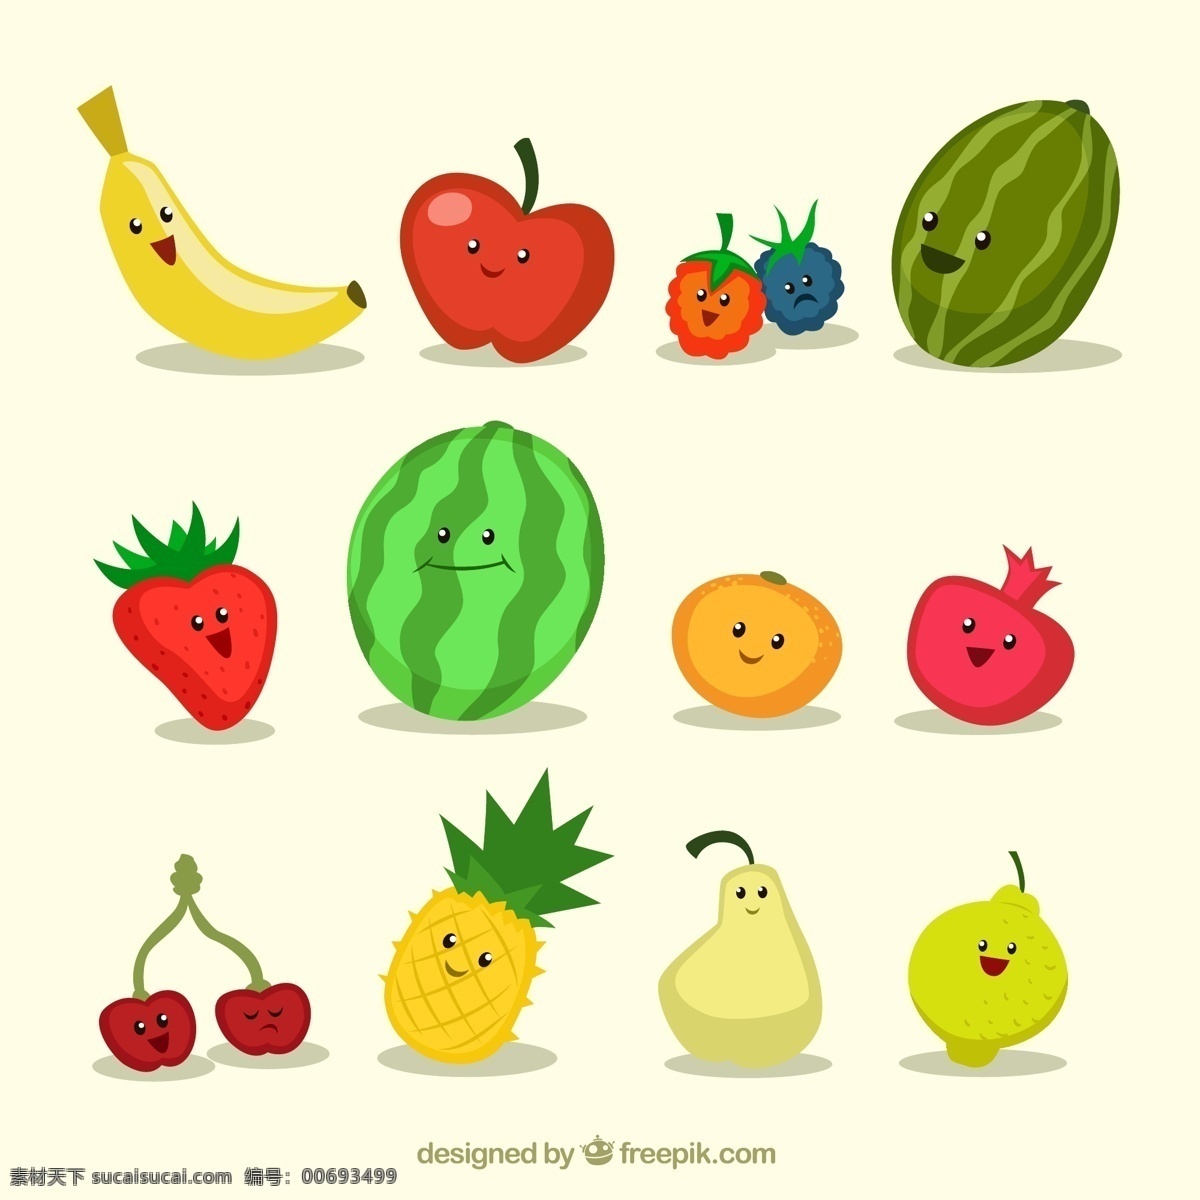 卡通 水果 矢量 香蕉 苹果 草莓 西瓜 橙子 石榴 杨梅 樱桃 菠萝 梨 柠檬 笑脸 表情 矢量图 白色